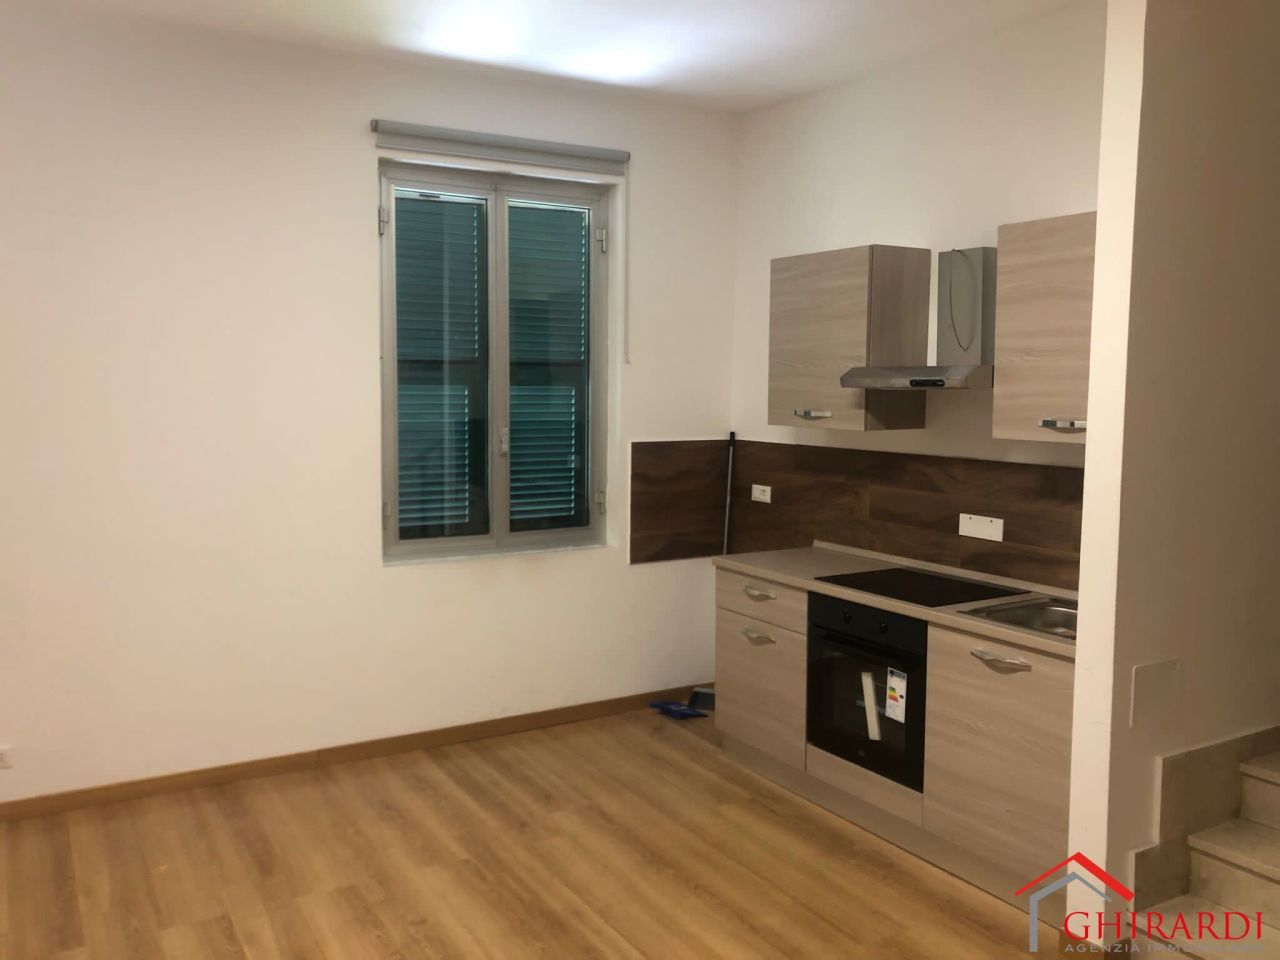 Appartamento in affitto a Genova, 3 locali, prezzo € 480 | PortaleAgenzieImmobiliari.it